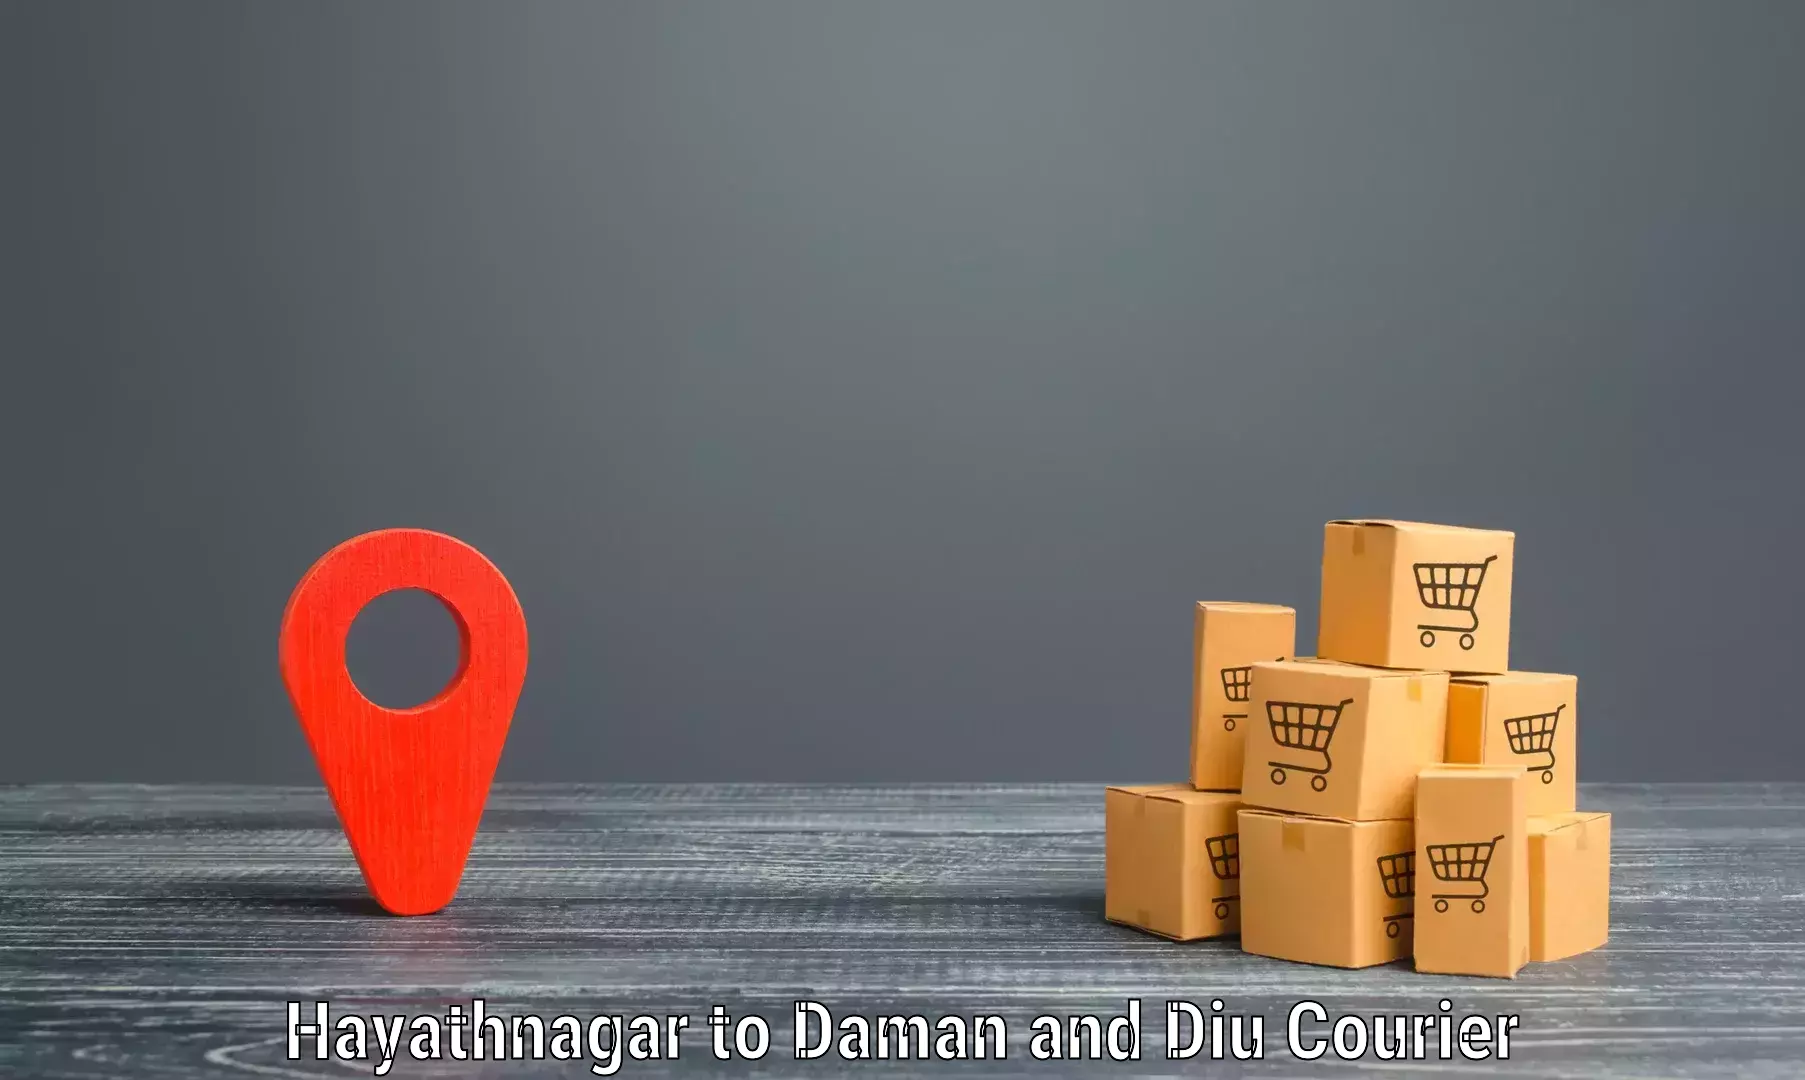 Courier app Hayathnagar to Diu